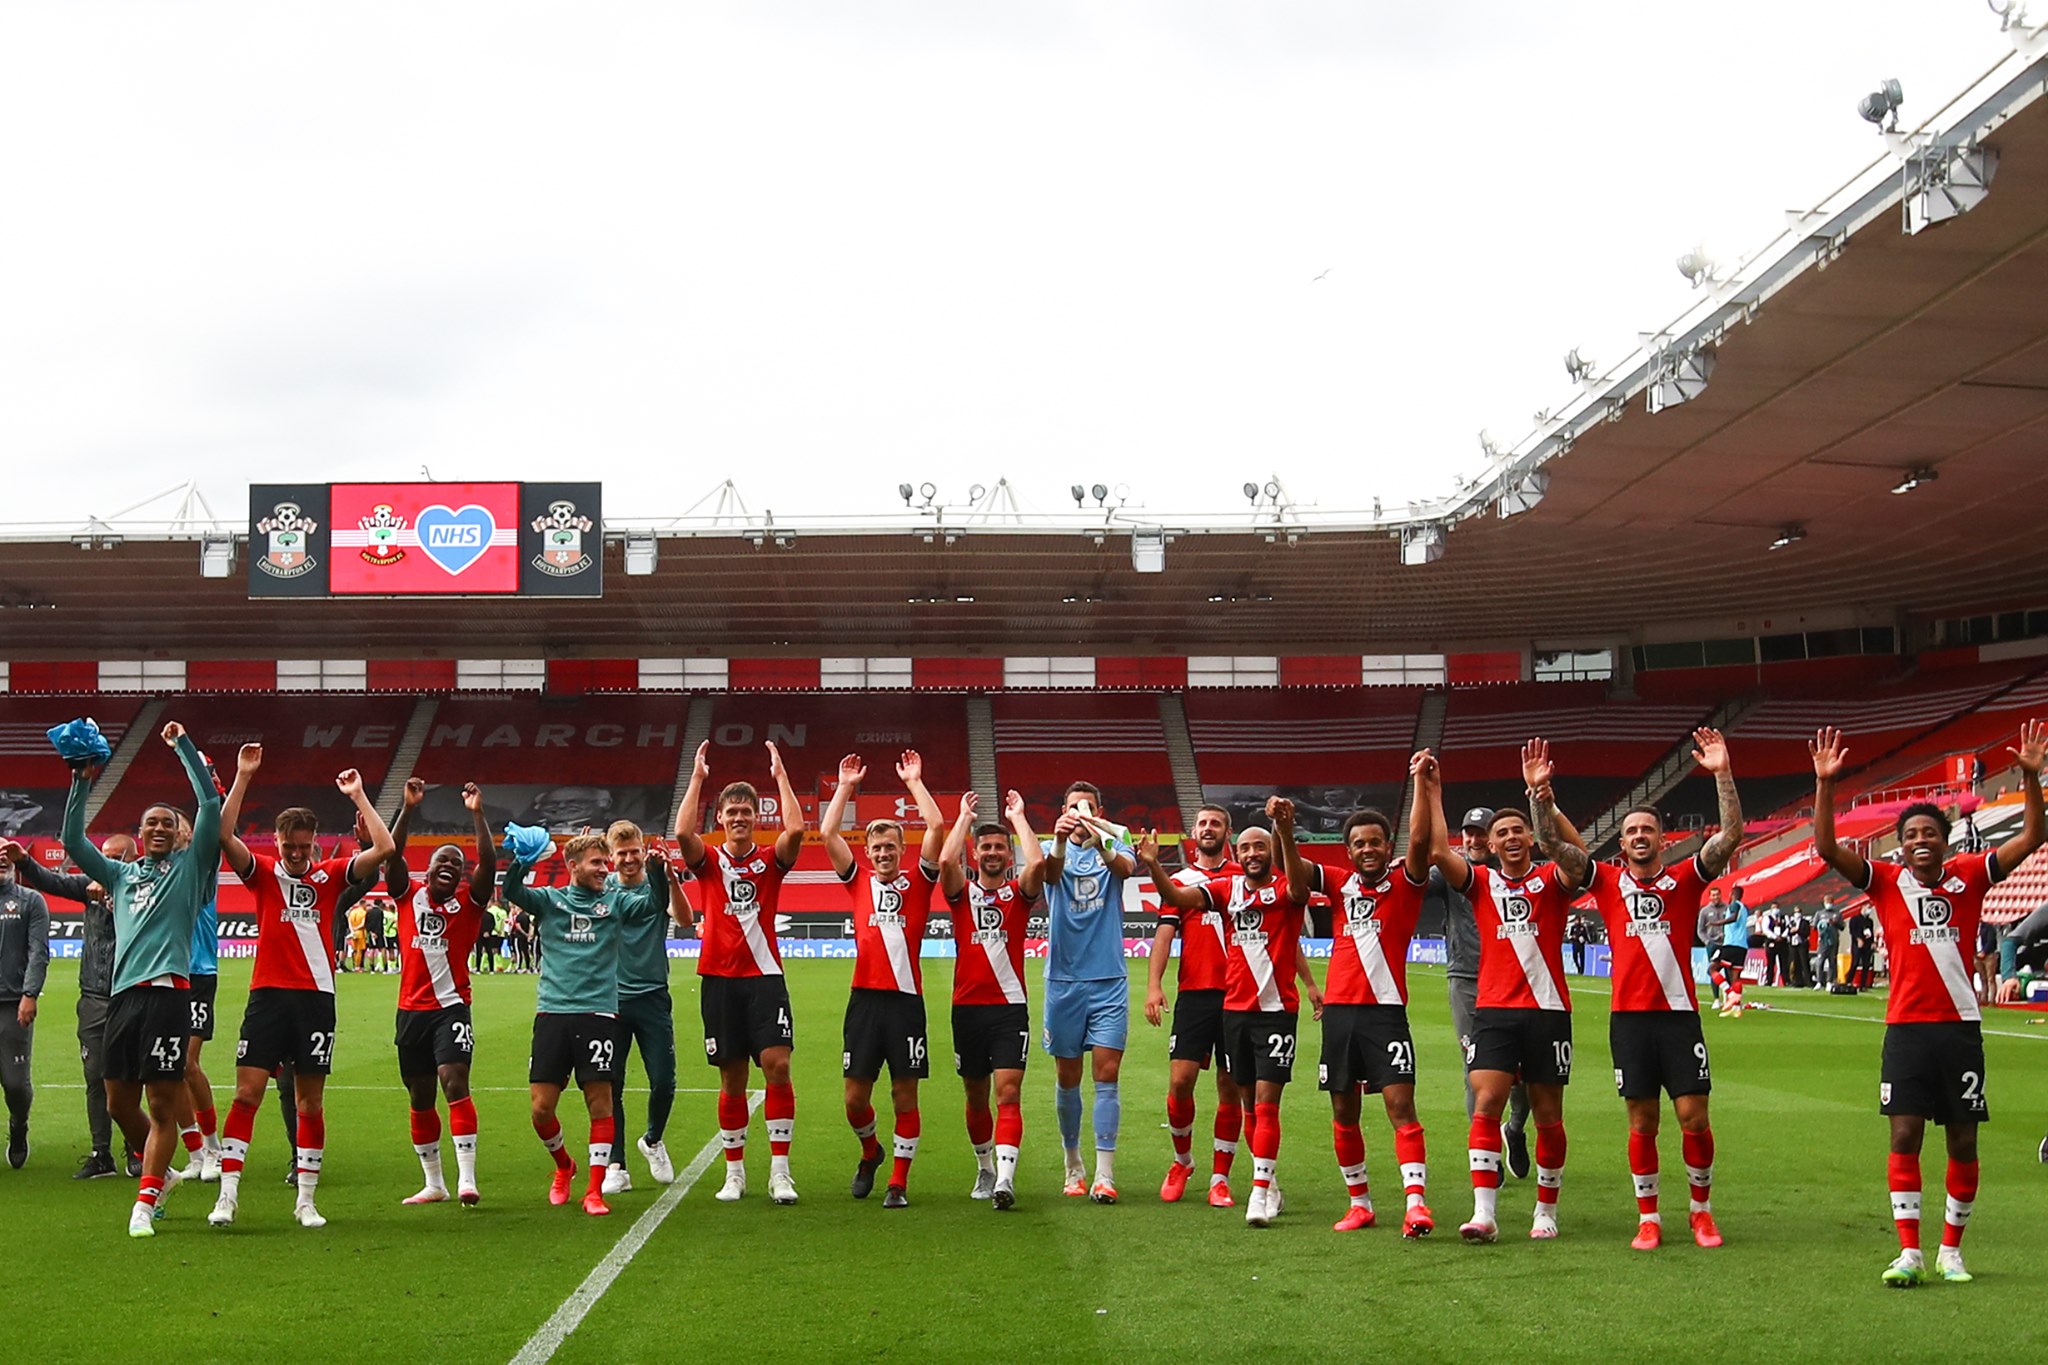 Southampton mùa giải 2020/21: Bảo vệ thành quả